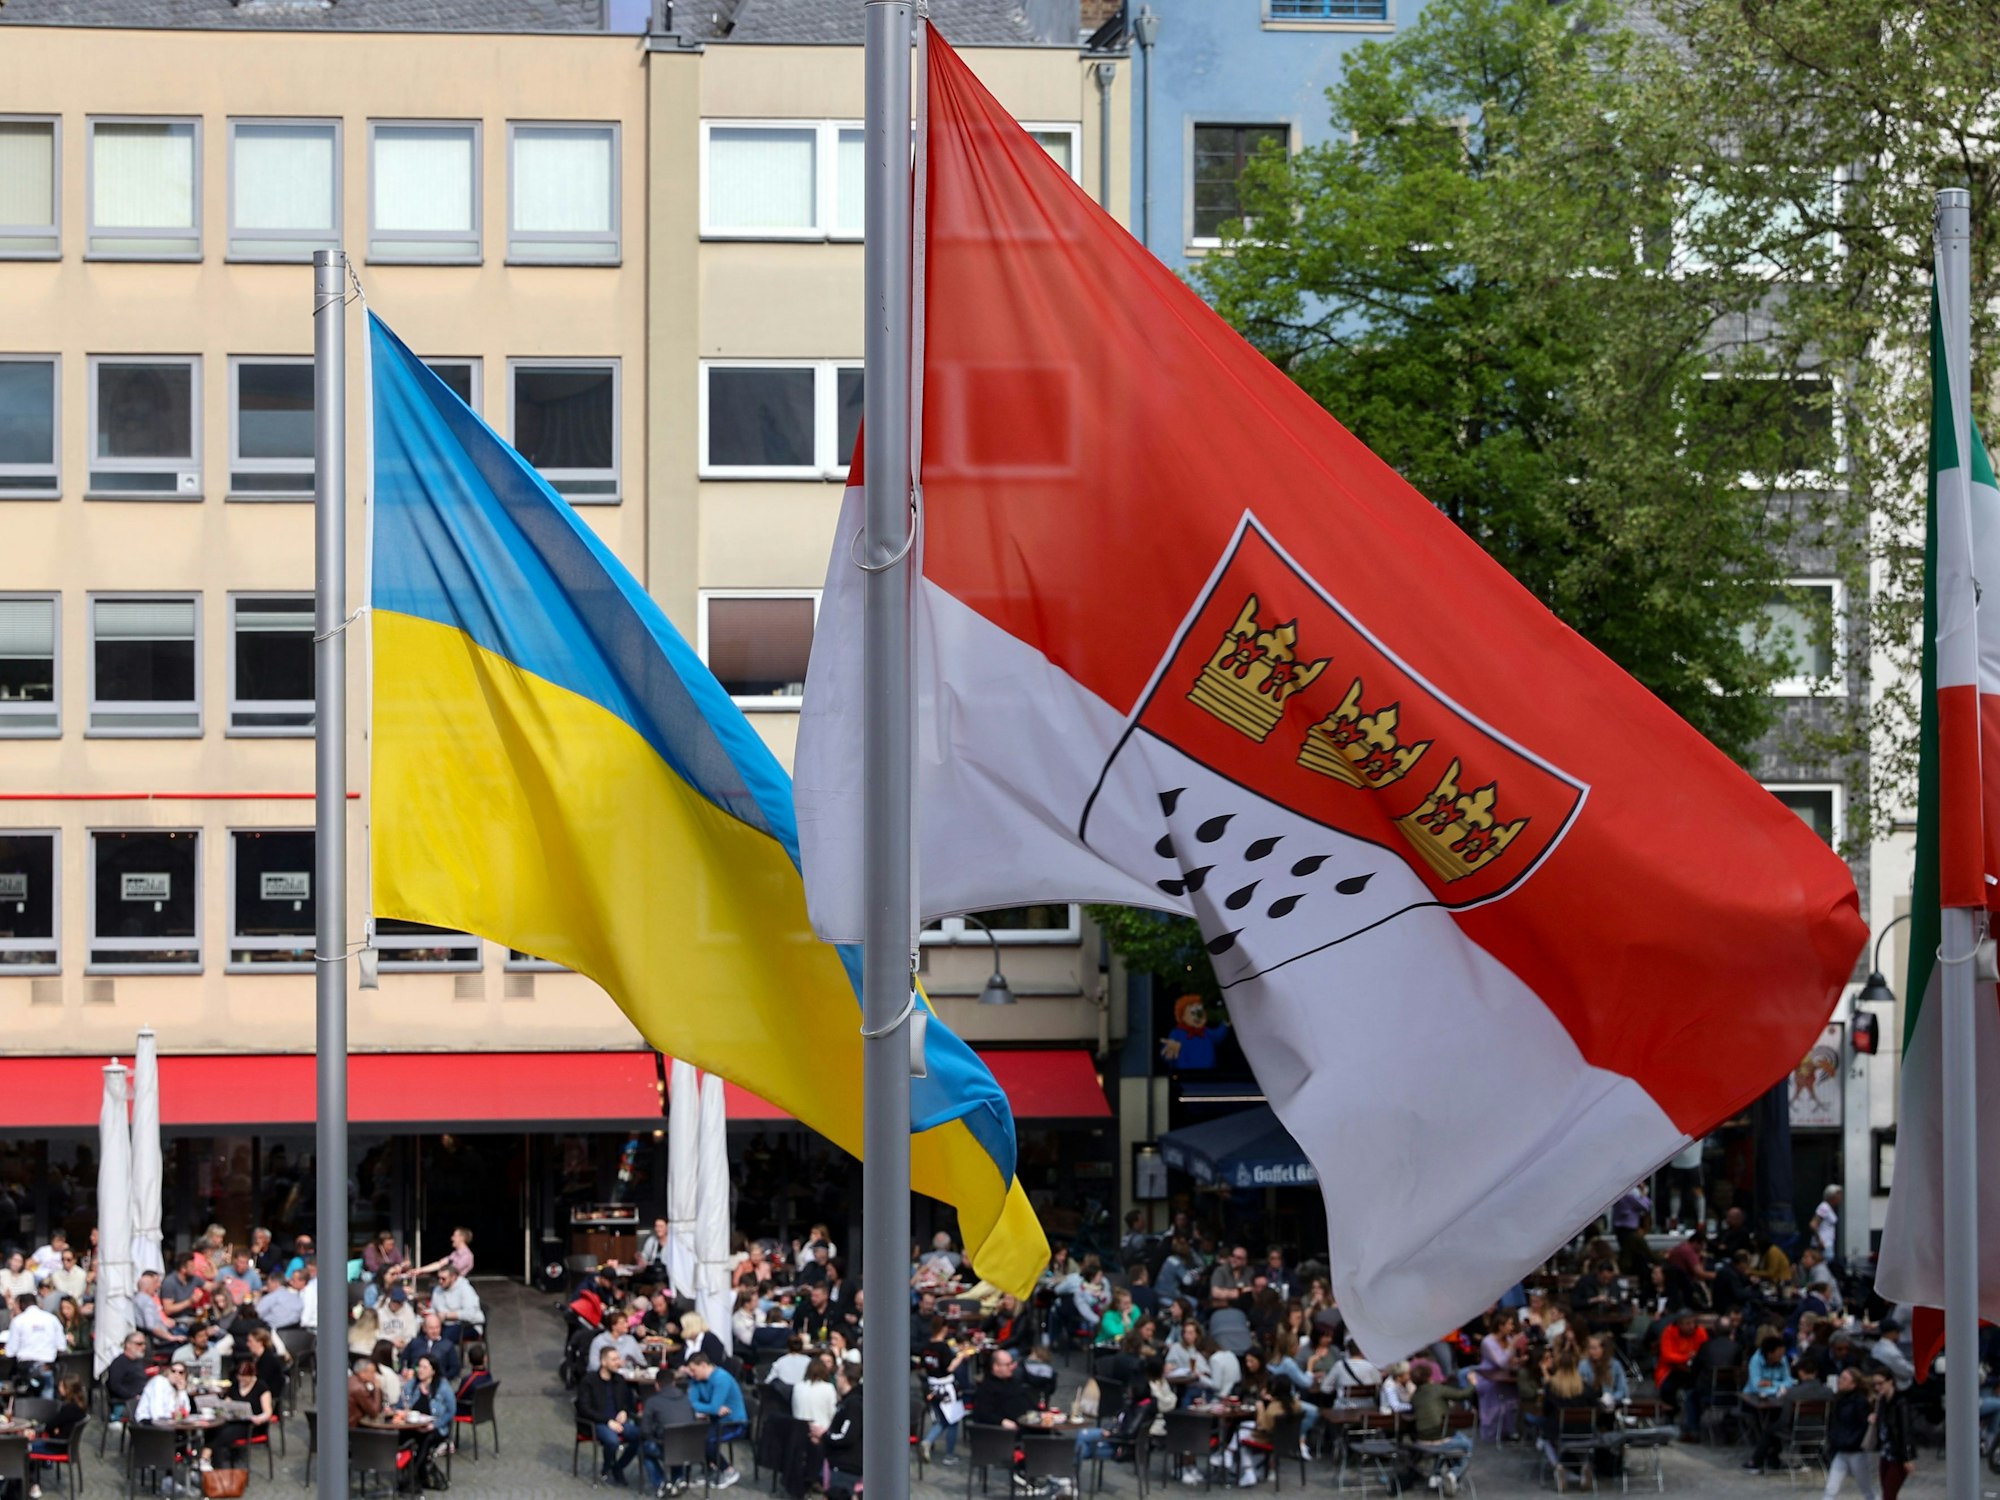 Ukrainische Fahne und die der Stadt Köln wehen vor dem Rathaus.